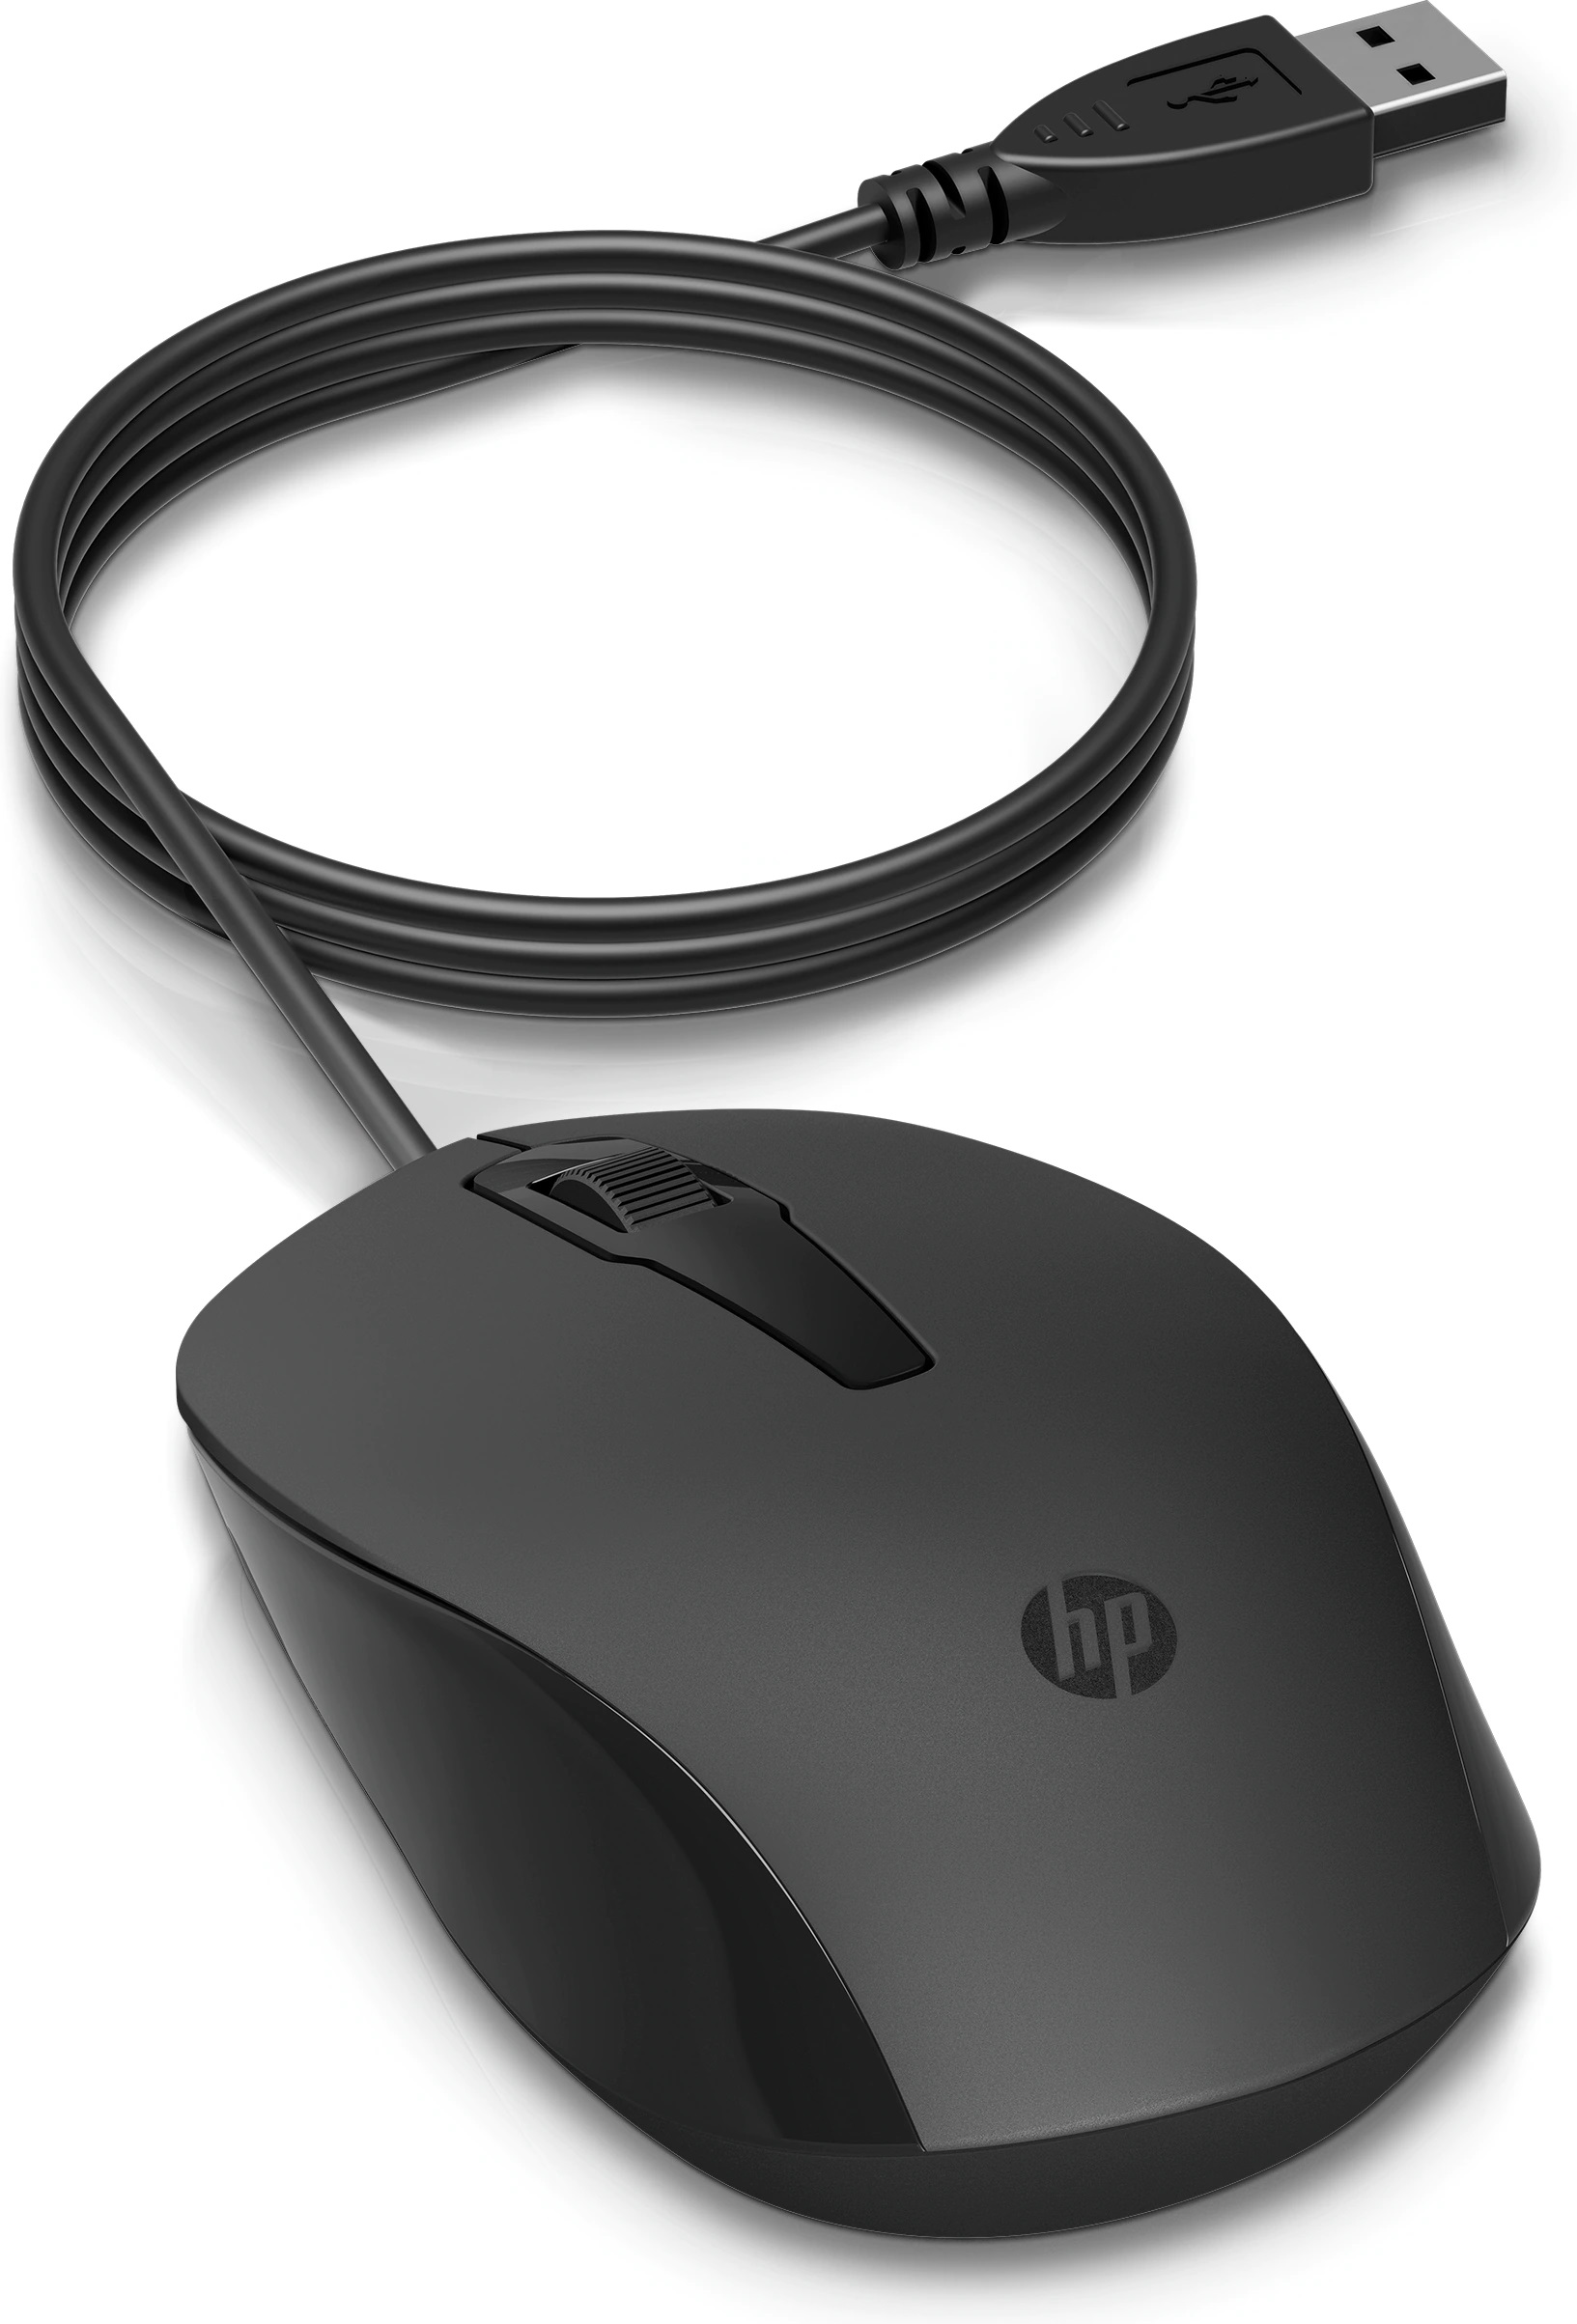 Obrázek HP 150 Mouse/Kancelářská/Optická/Drátová USB/Černá